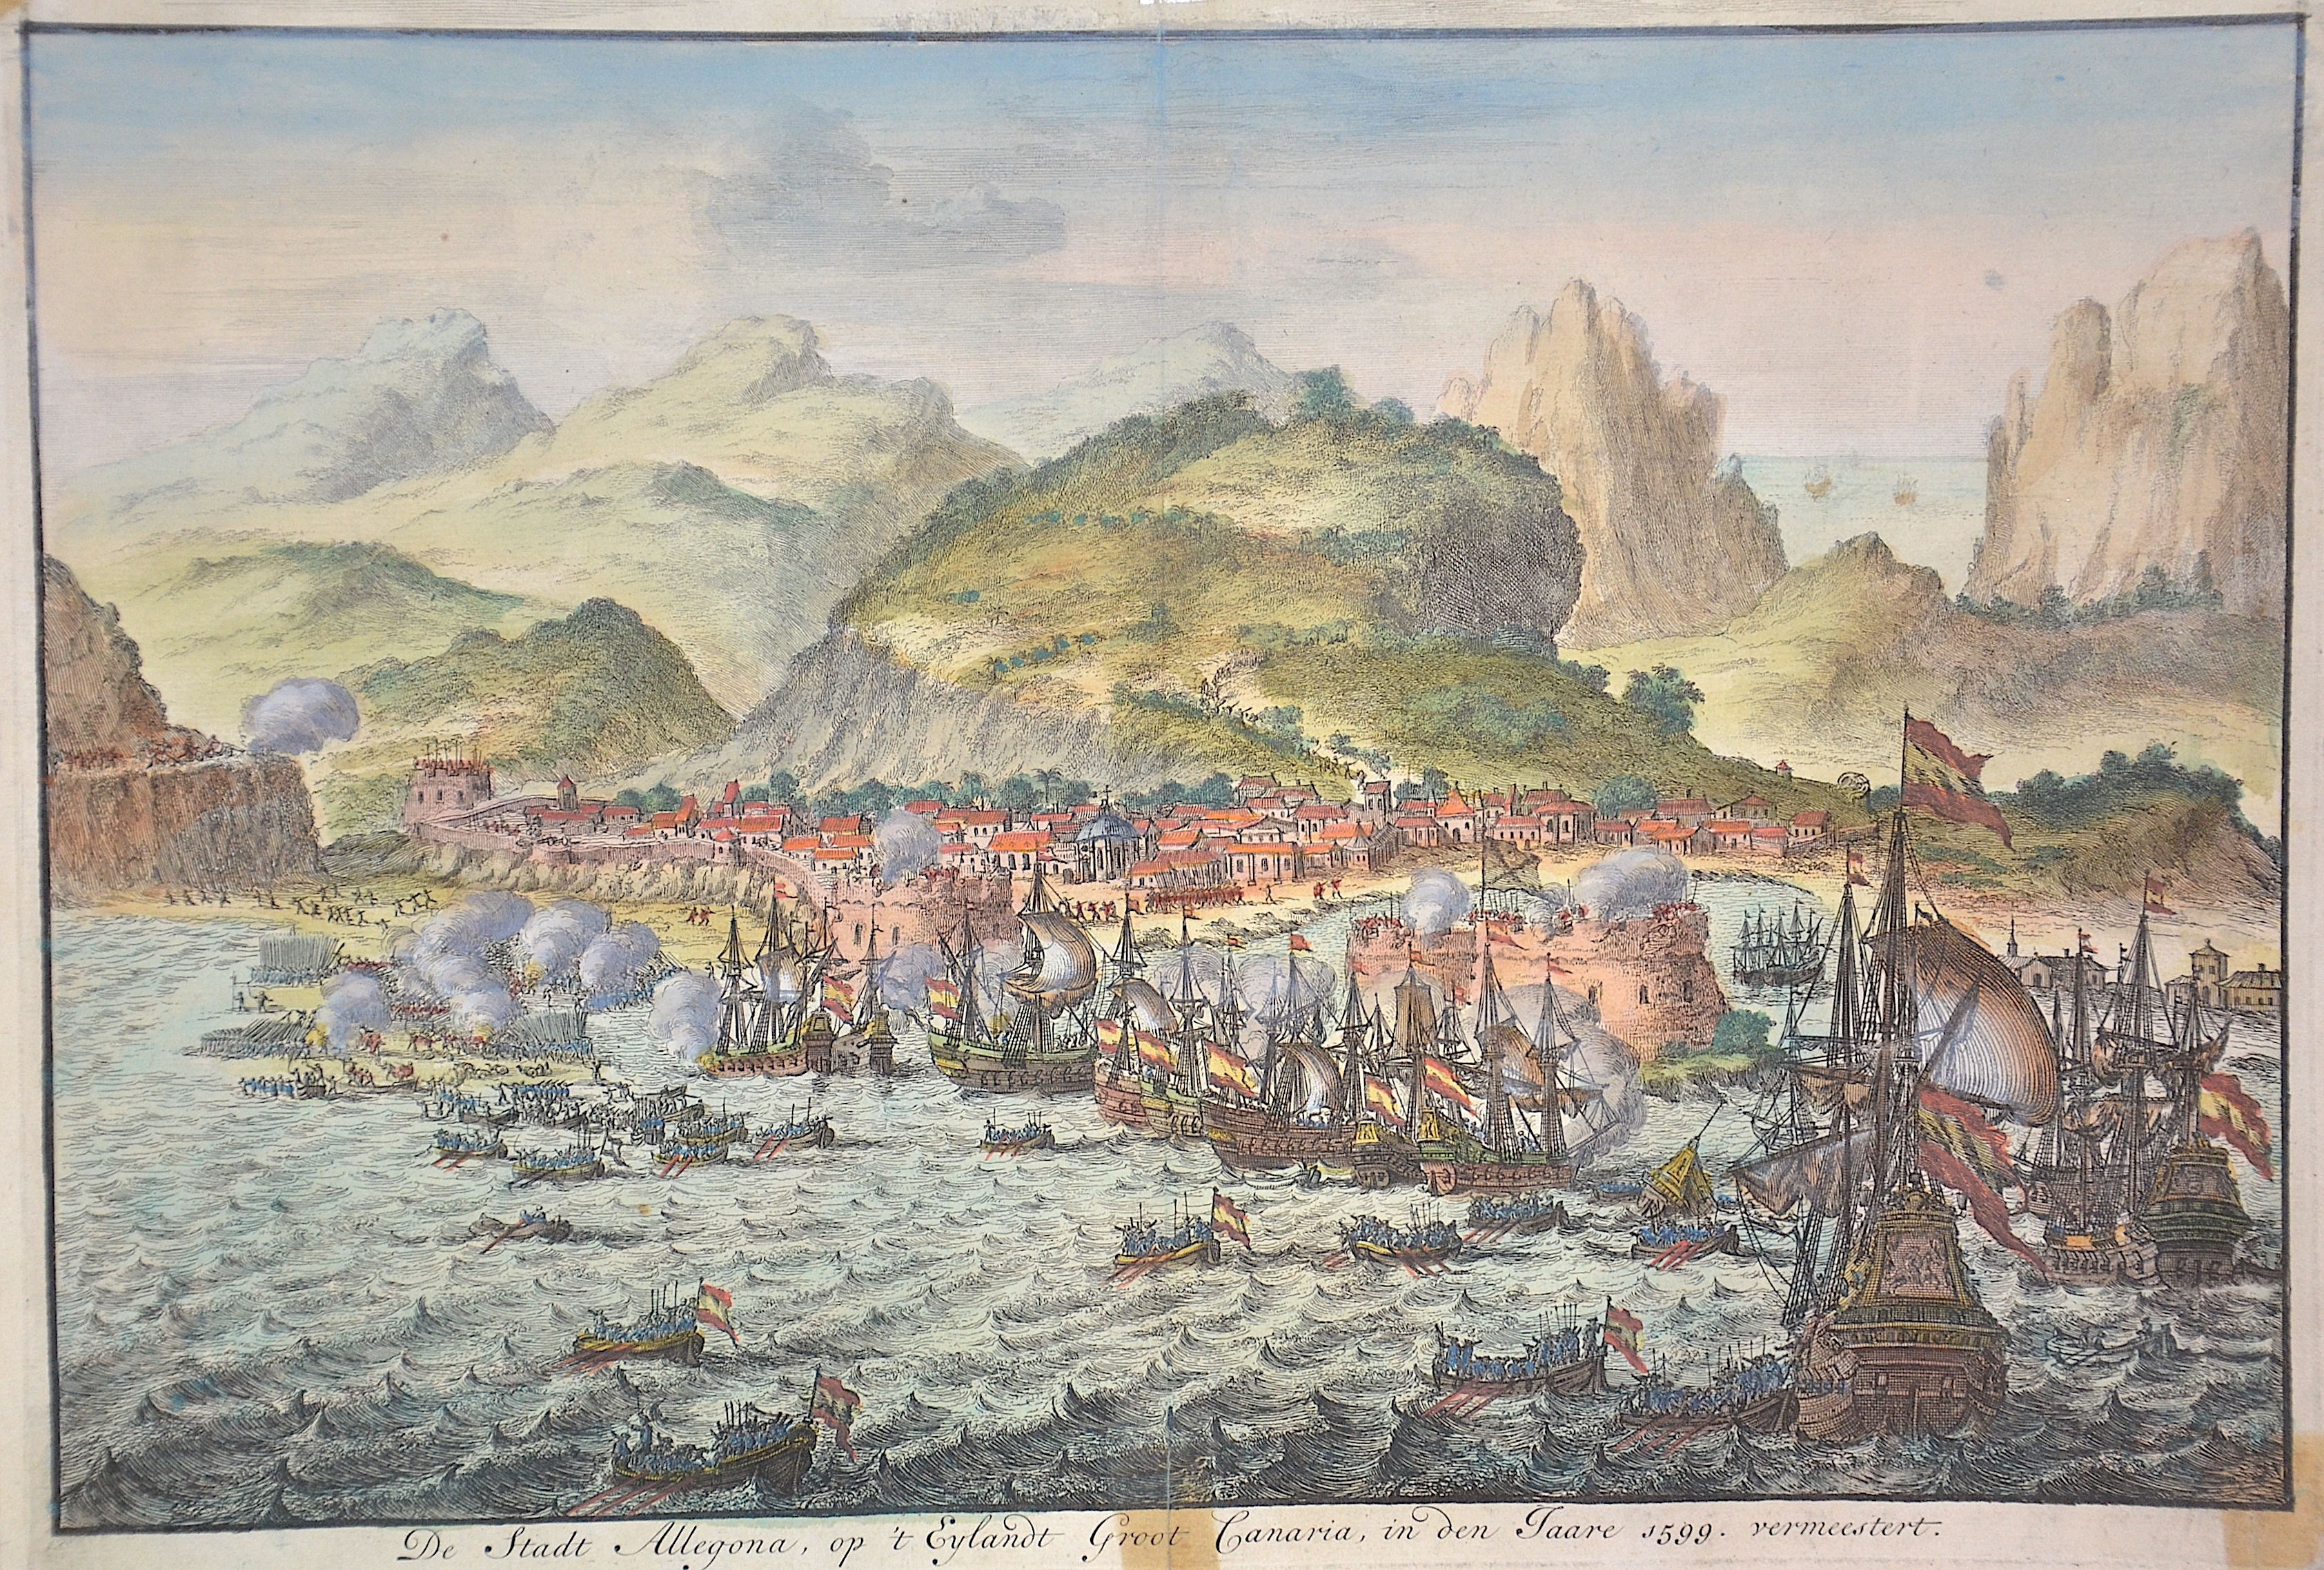 Anonymus  De Stadt Allegona, op ‘tEylandt Groot Canaria, in den Jaare 1599. vermeestert.